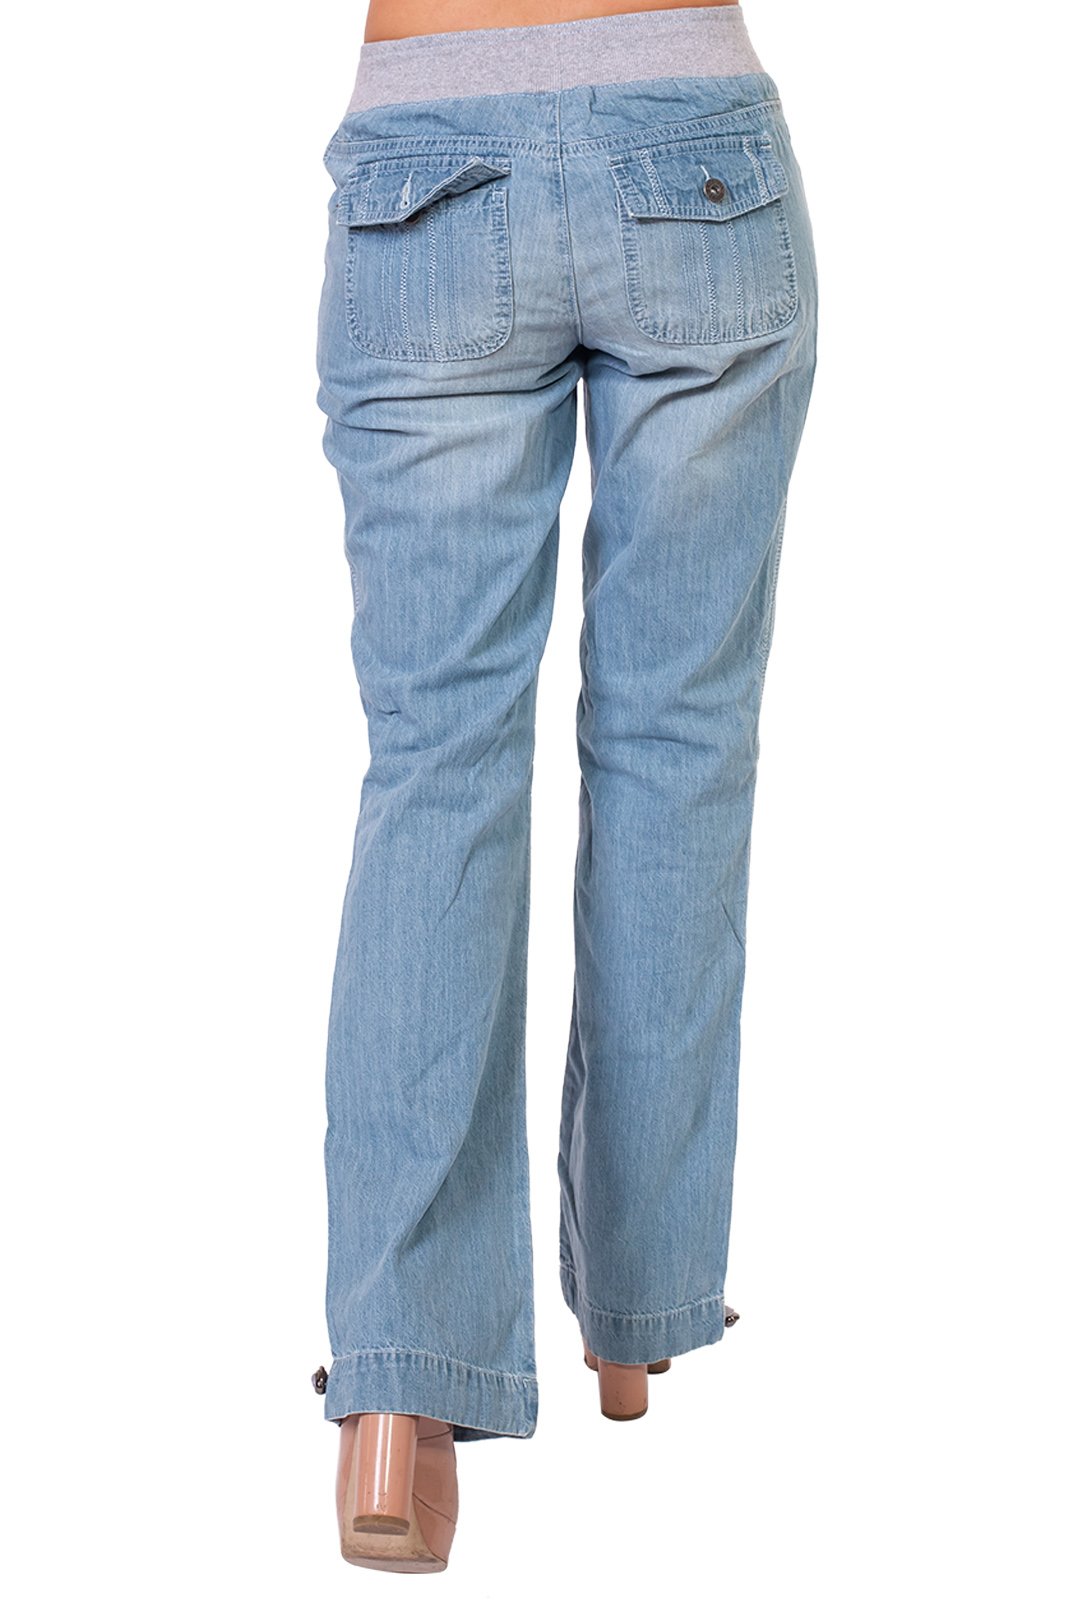 Озон женские джинсы на резинке. Oklahoma Premium Denim джинсы. Джинсы на резинке женские. Широкие джинсы на резинке. Джинсы с резинкой на поясе женские.